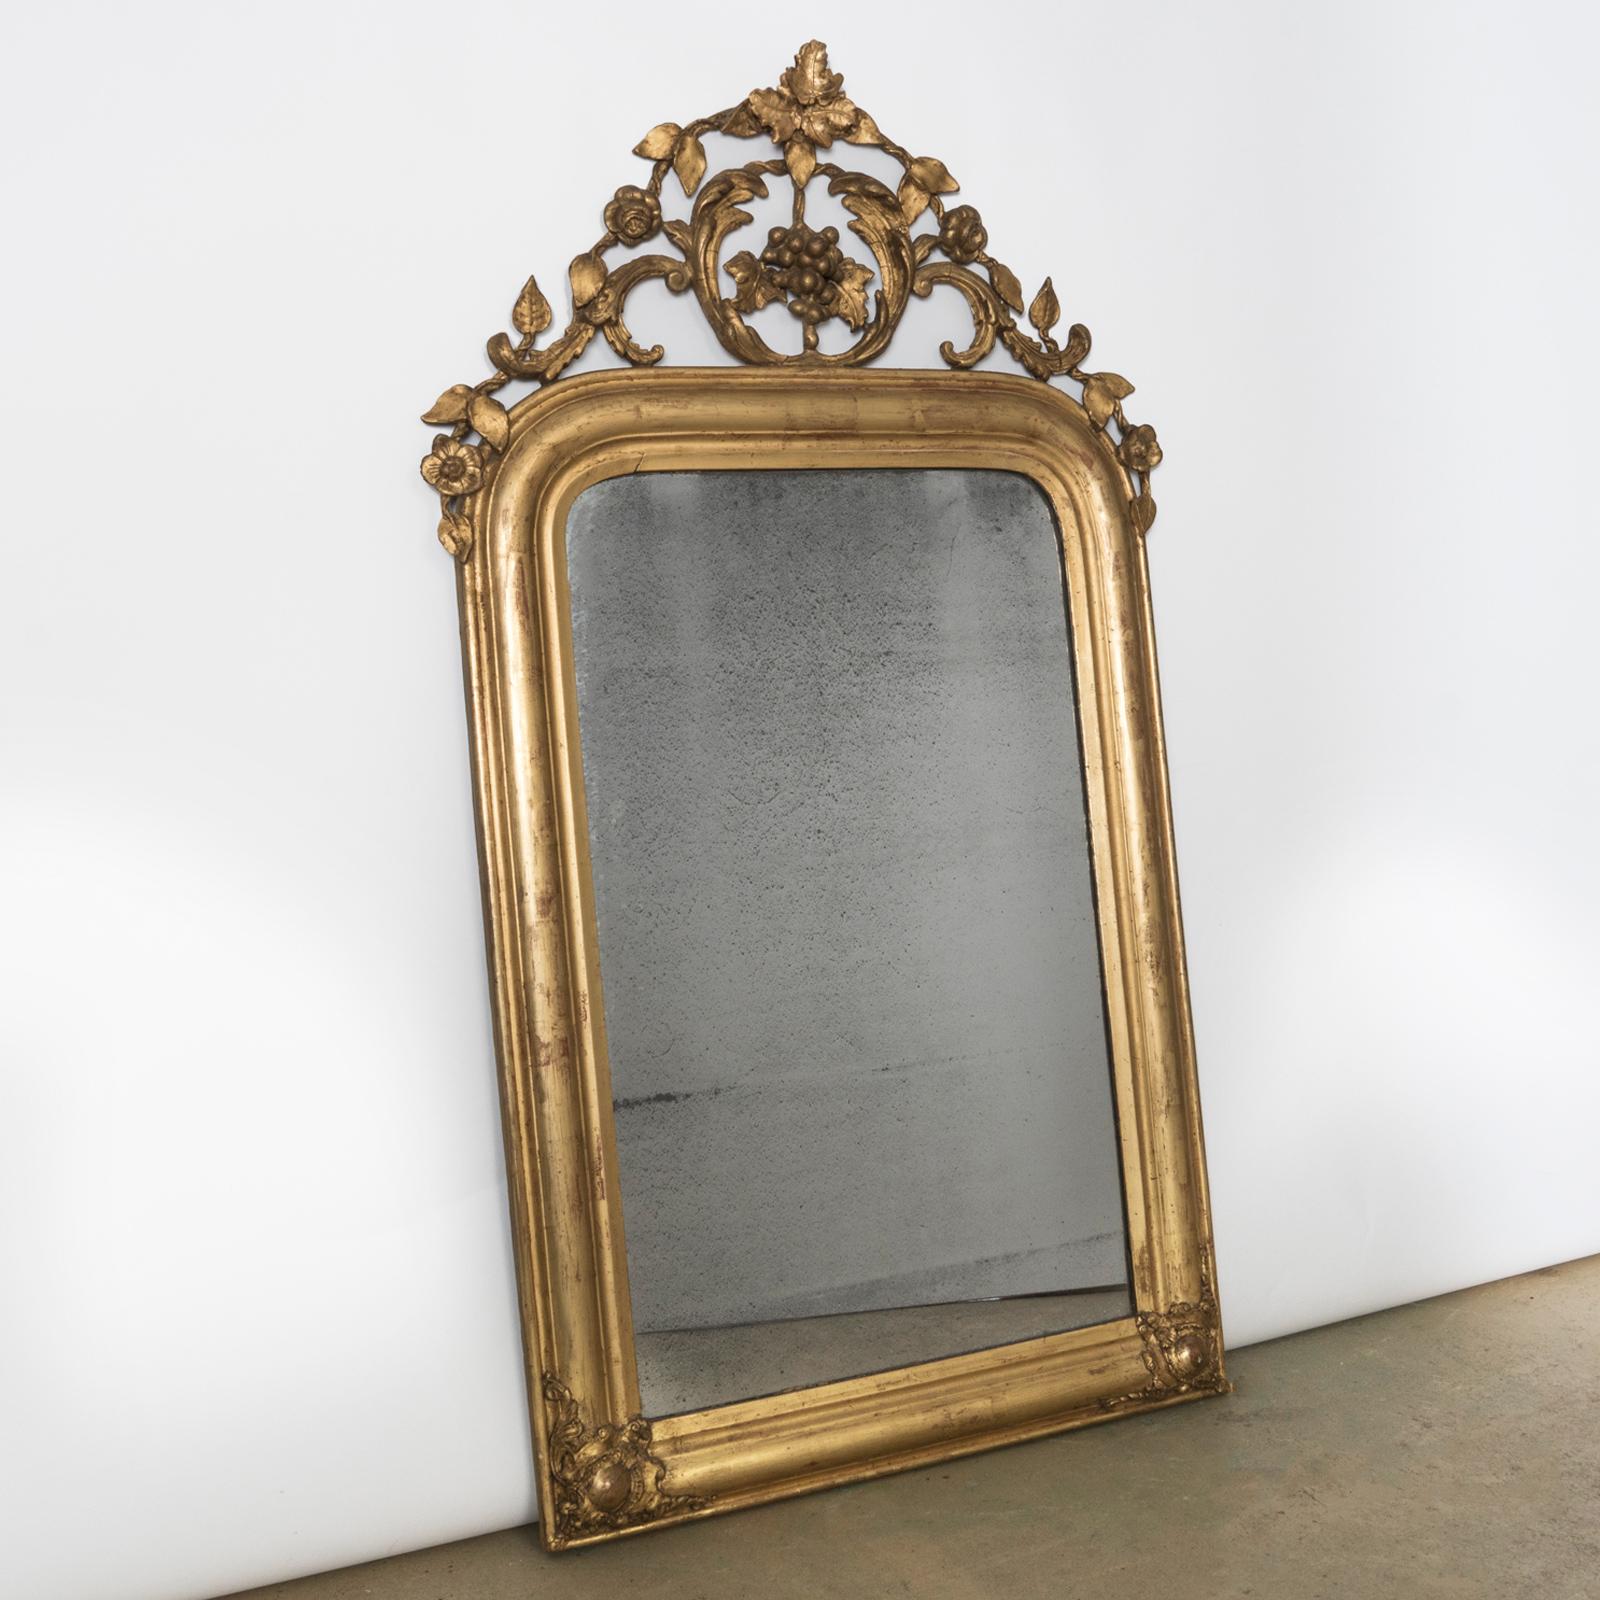 Exquisiter Louis-Philippe-Spiegel aus dem 19. Jahrhundert in Gold vergoldet, mit einer bezaubernden Kartusche, die mit verschlungenen Blättern und Traubenmotiven verziert ist. Frankreich, ca. 1850 - 1880er Jahre.

Dieser herrliche antike